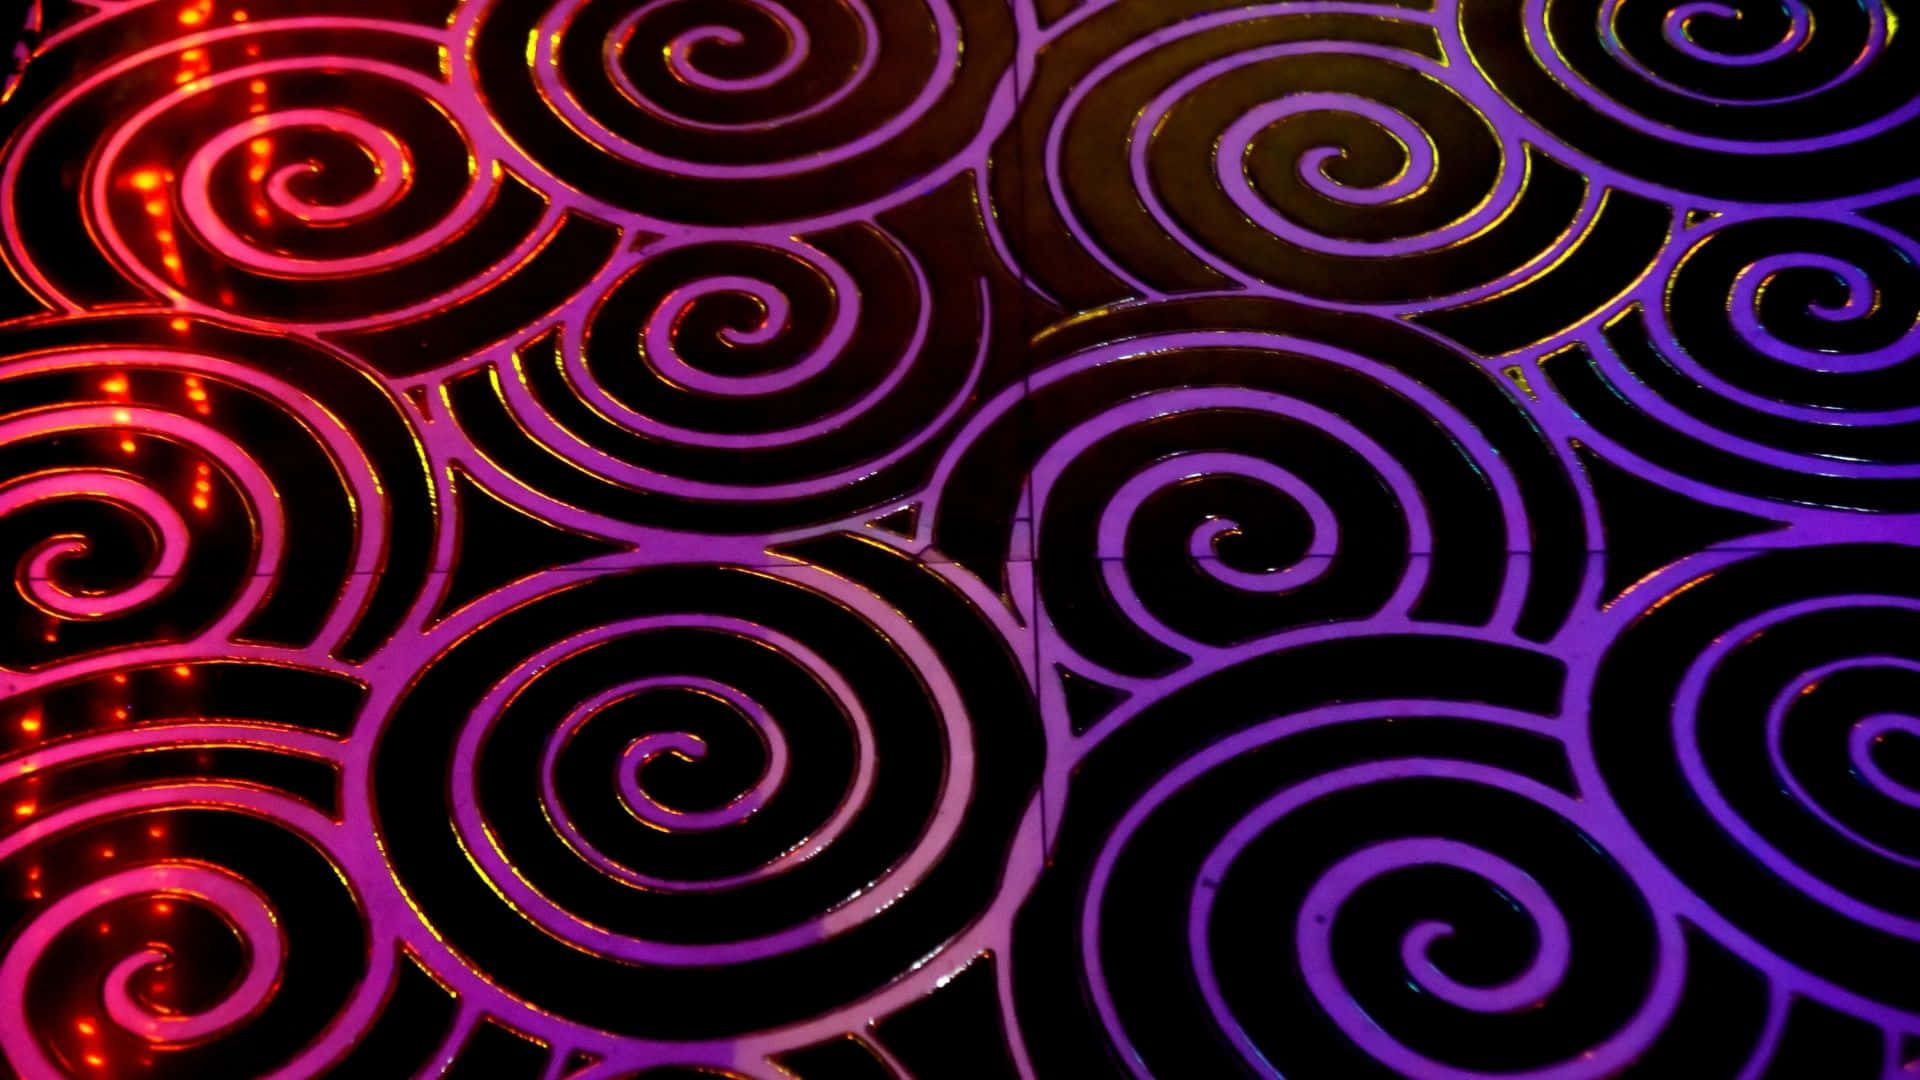 Unpatrón En Espiral De Color Púrpura Y Negro